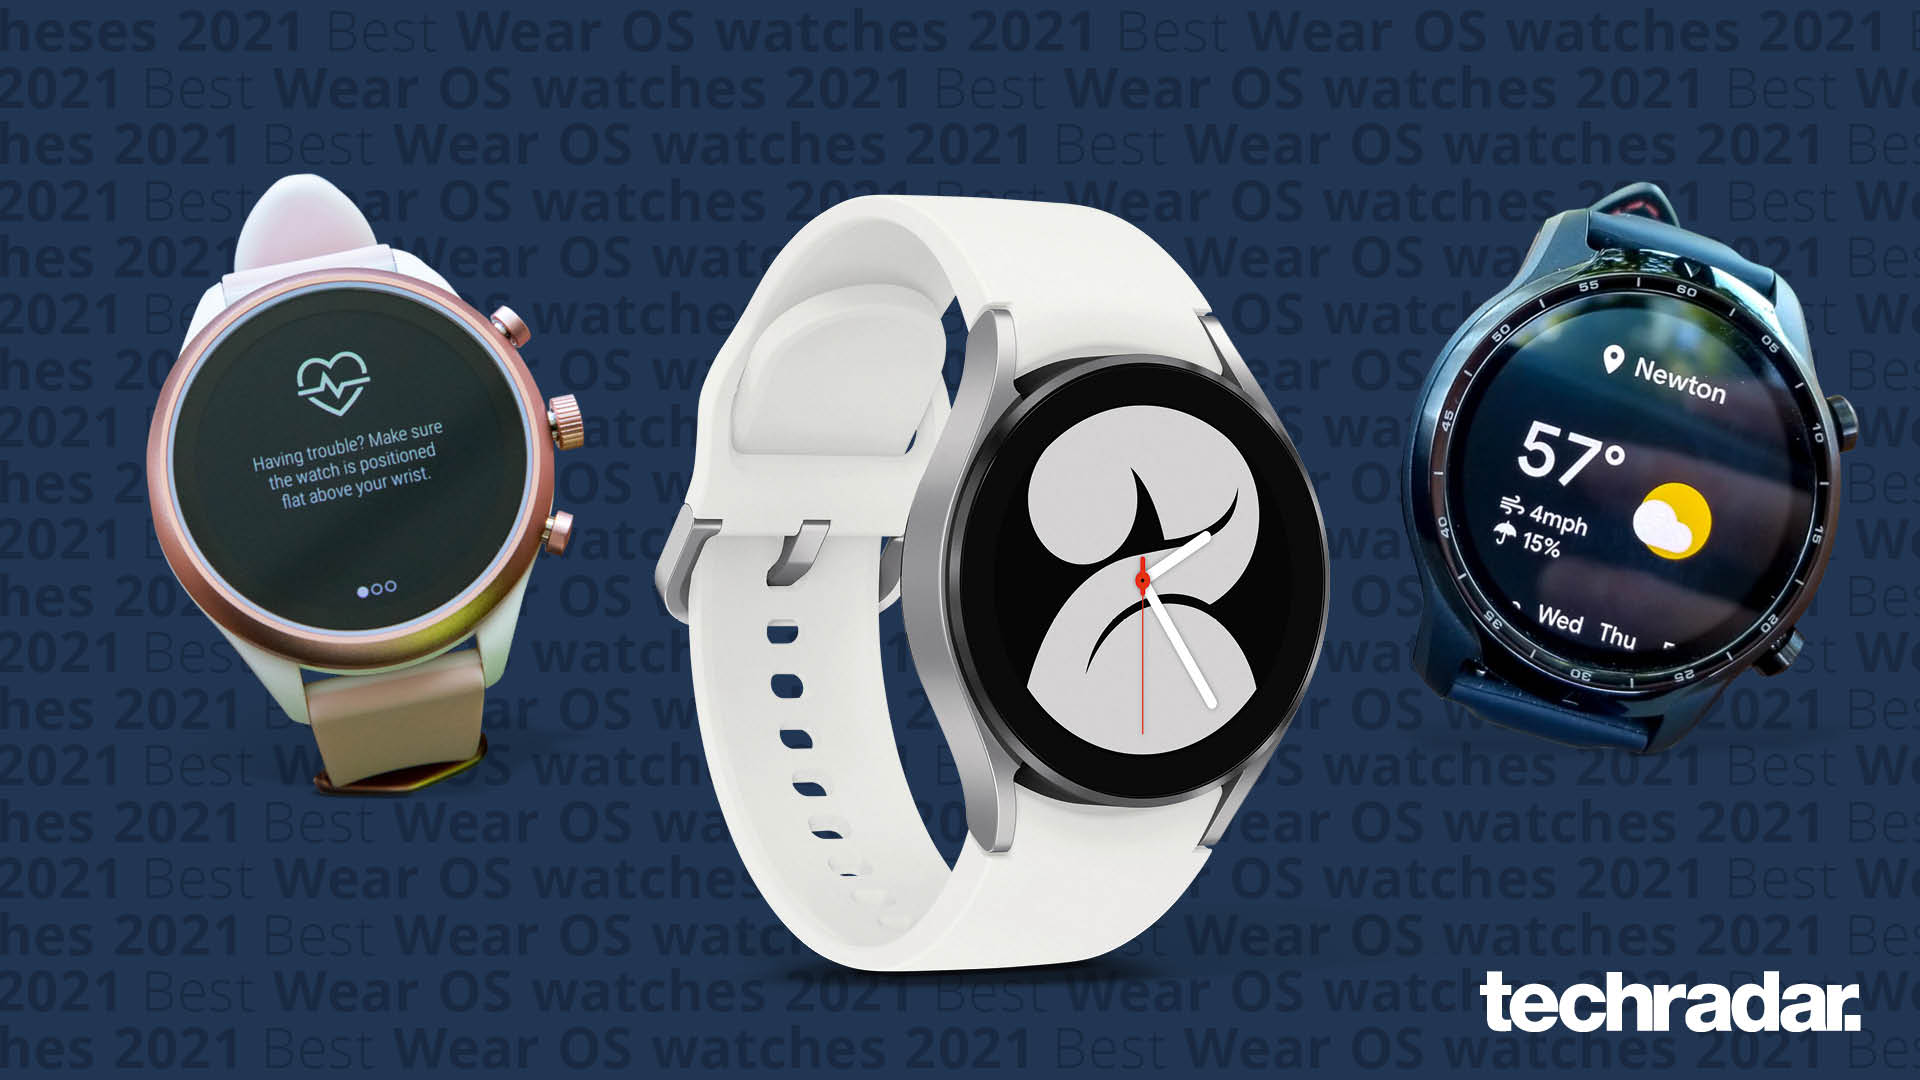 samtidig beskytte bevæge sig De bedste Wear OS-smartwatches i 2022 | TechRadar